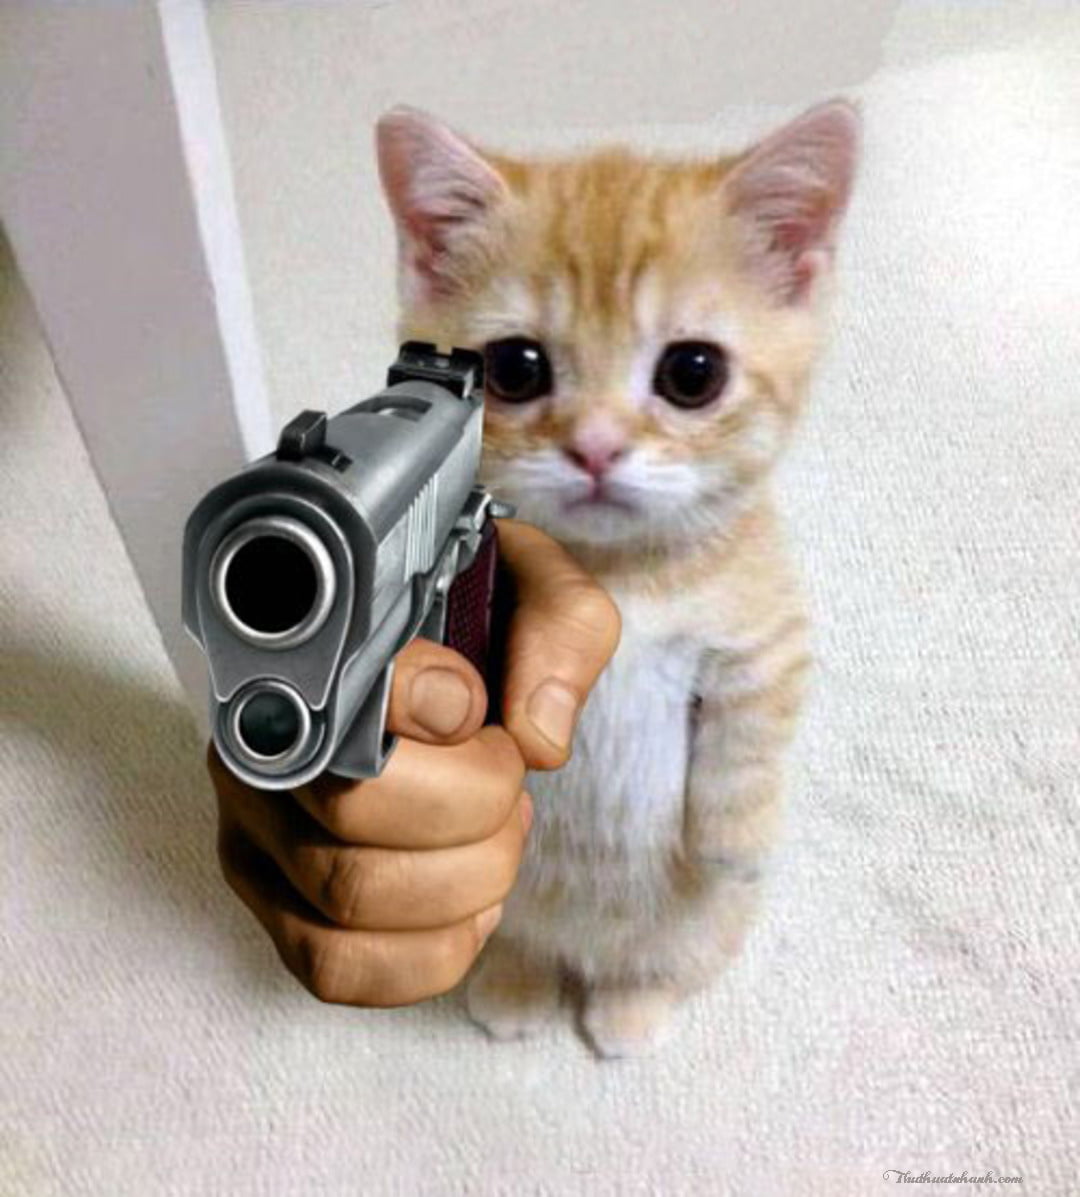 Mèo cầm súng: Bạn đã từng thấy một chú mèo đeo khẩu trang cầm súng chưa? Hãy cùng đến với hình ảnh vô cùng hấp dẫn này, khiến bạn không thể rời mắt khỏi chú mèo tinh nghịch này.